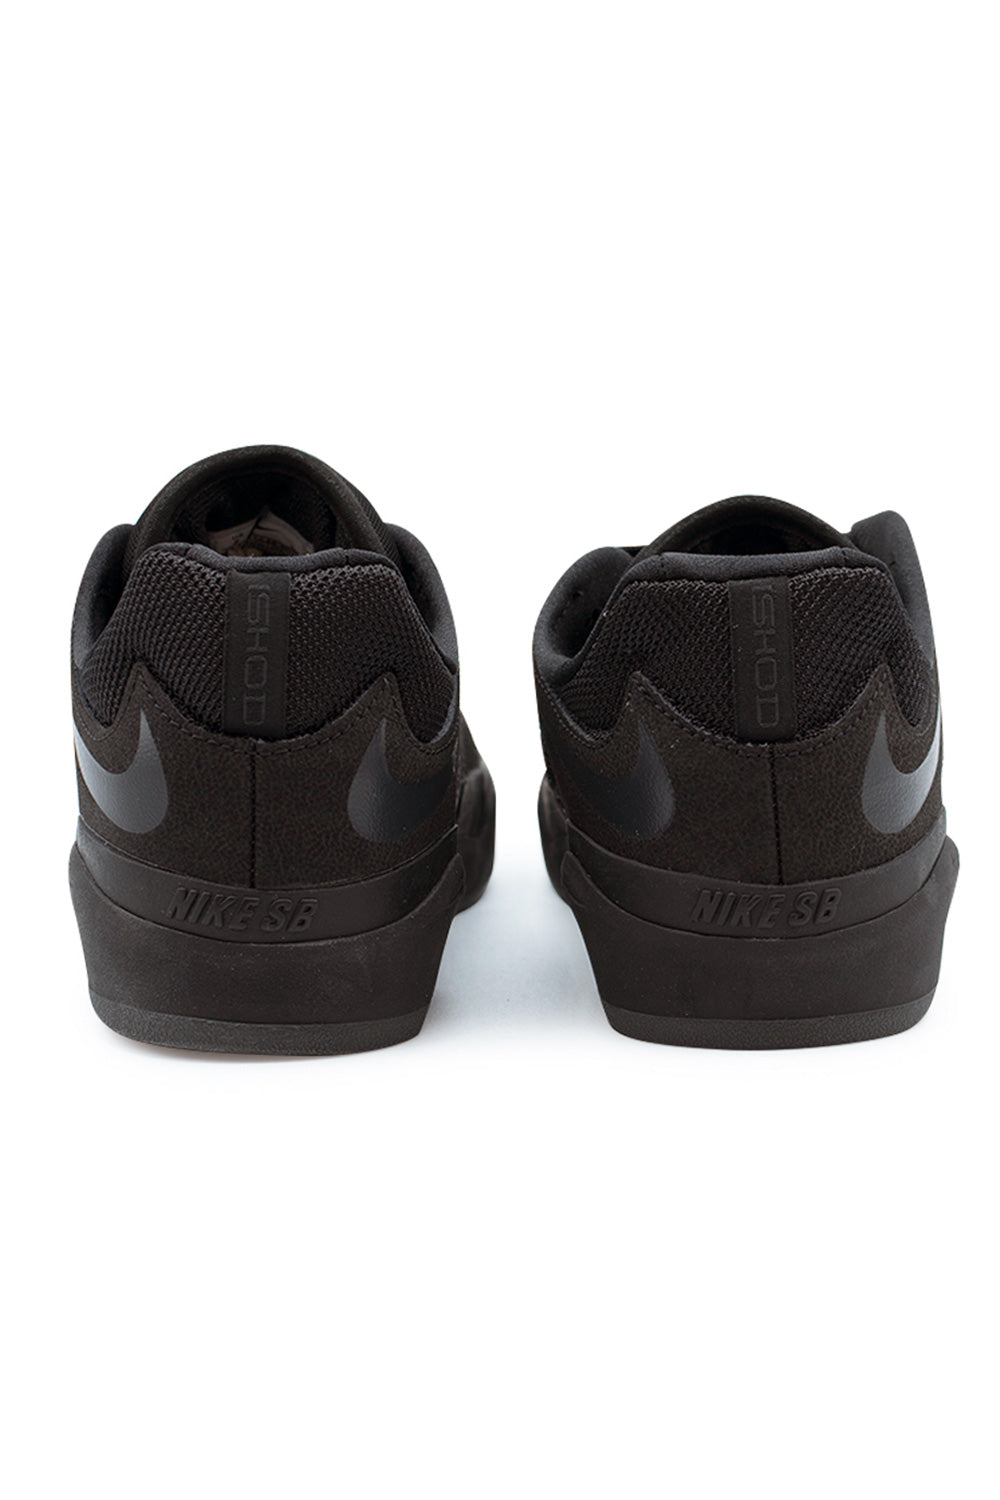 Nike SB Ishod PRM L Shoe Black / Black / Black / Black - BONKERS